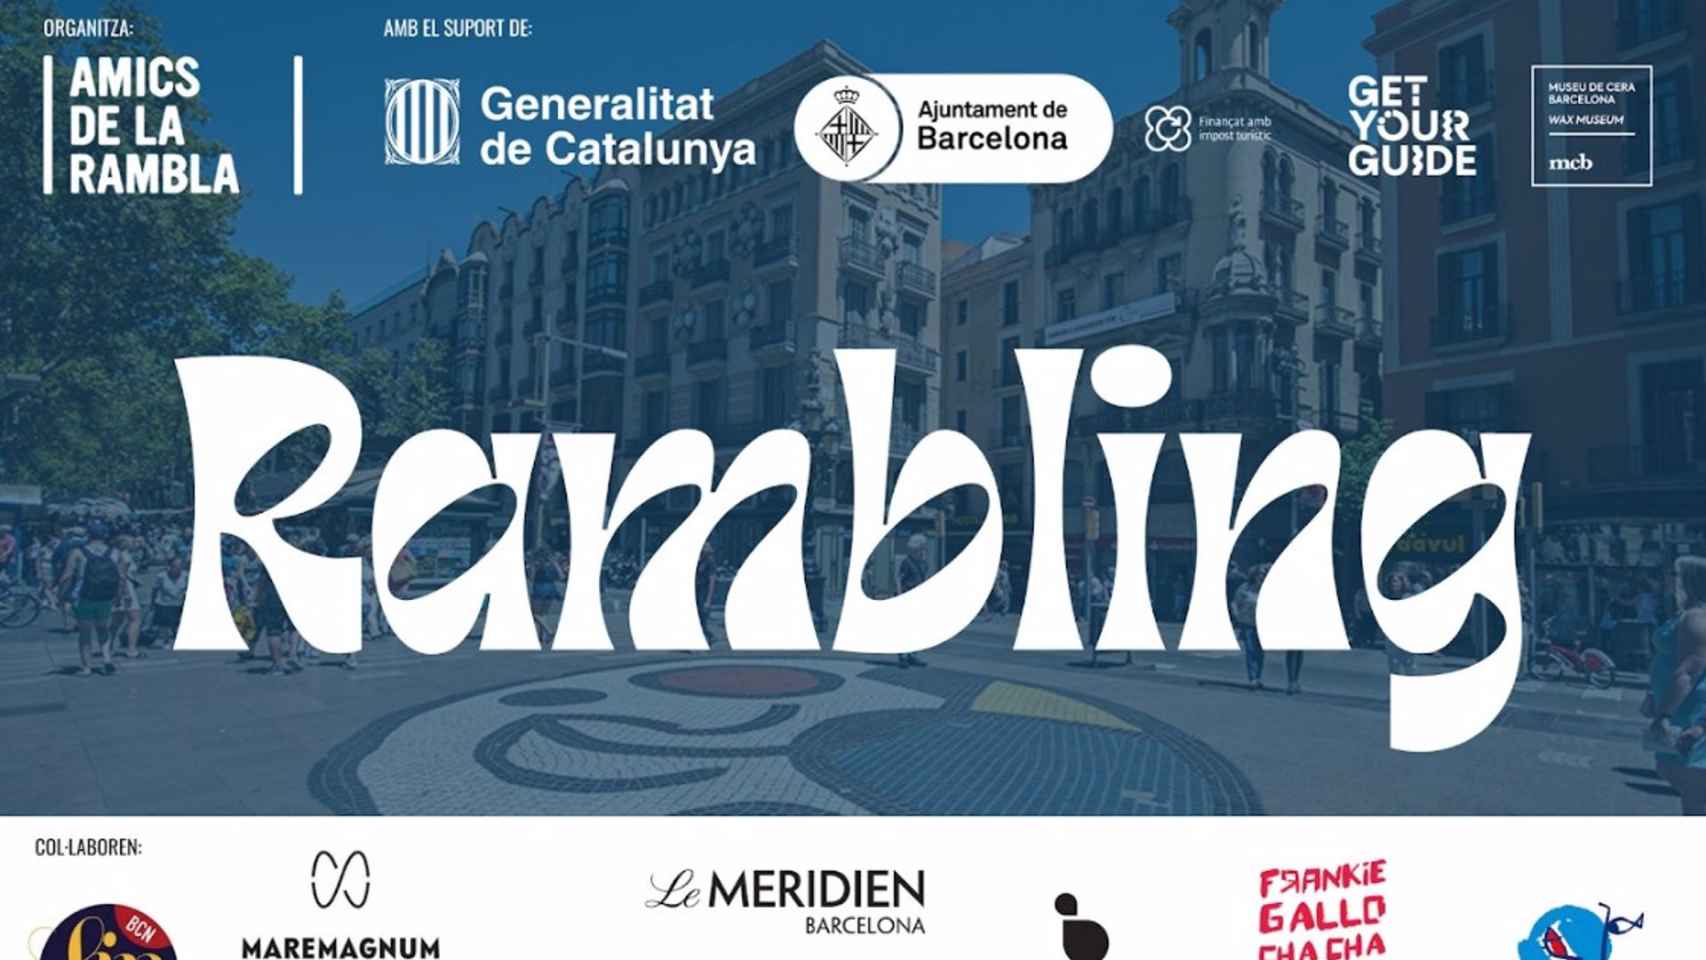 Amics de la Rambla de Barcelona organiza este viernes un juego interactivo con tres rutas virtuales